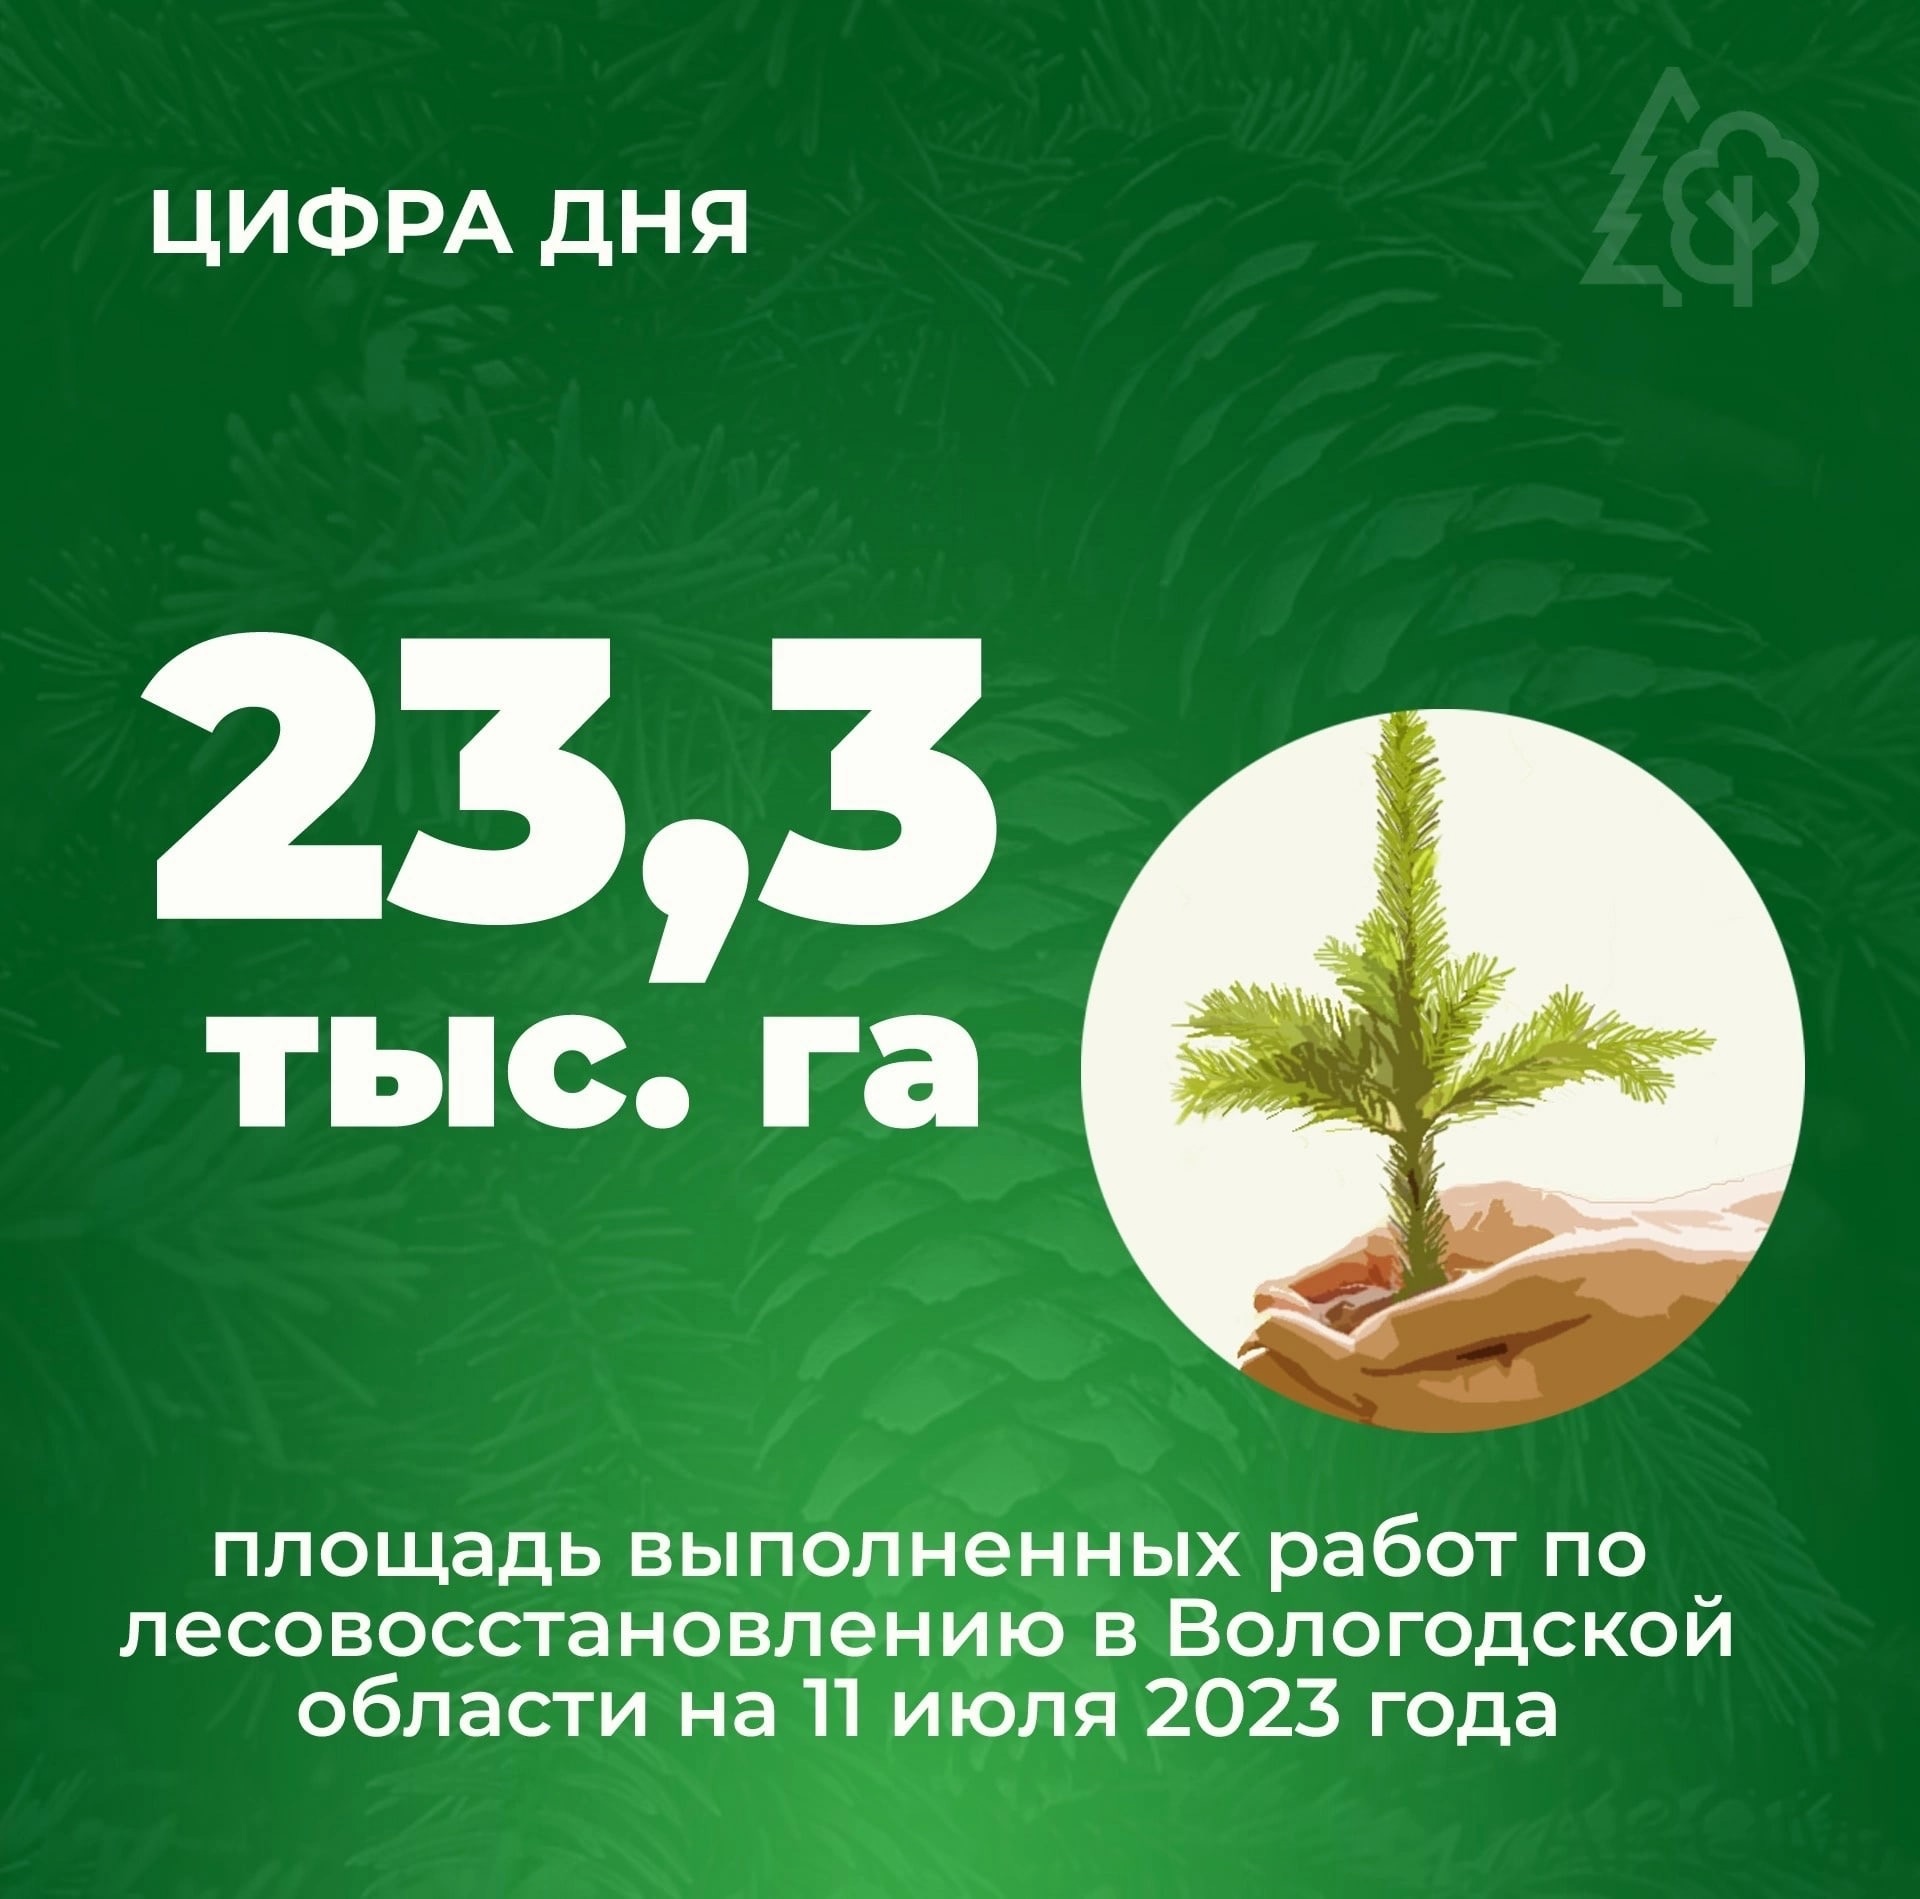  Кадуйский округ выполнил государственное задание по искусственному лесовосстановлению в полном объеме..